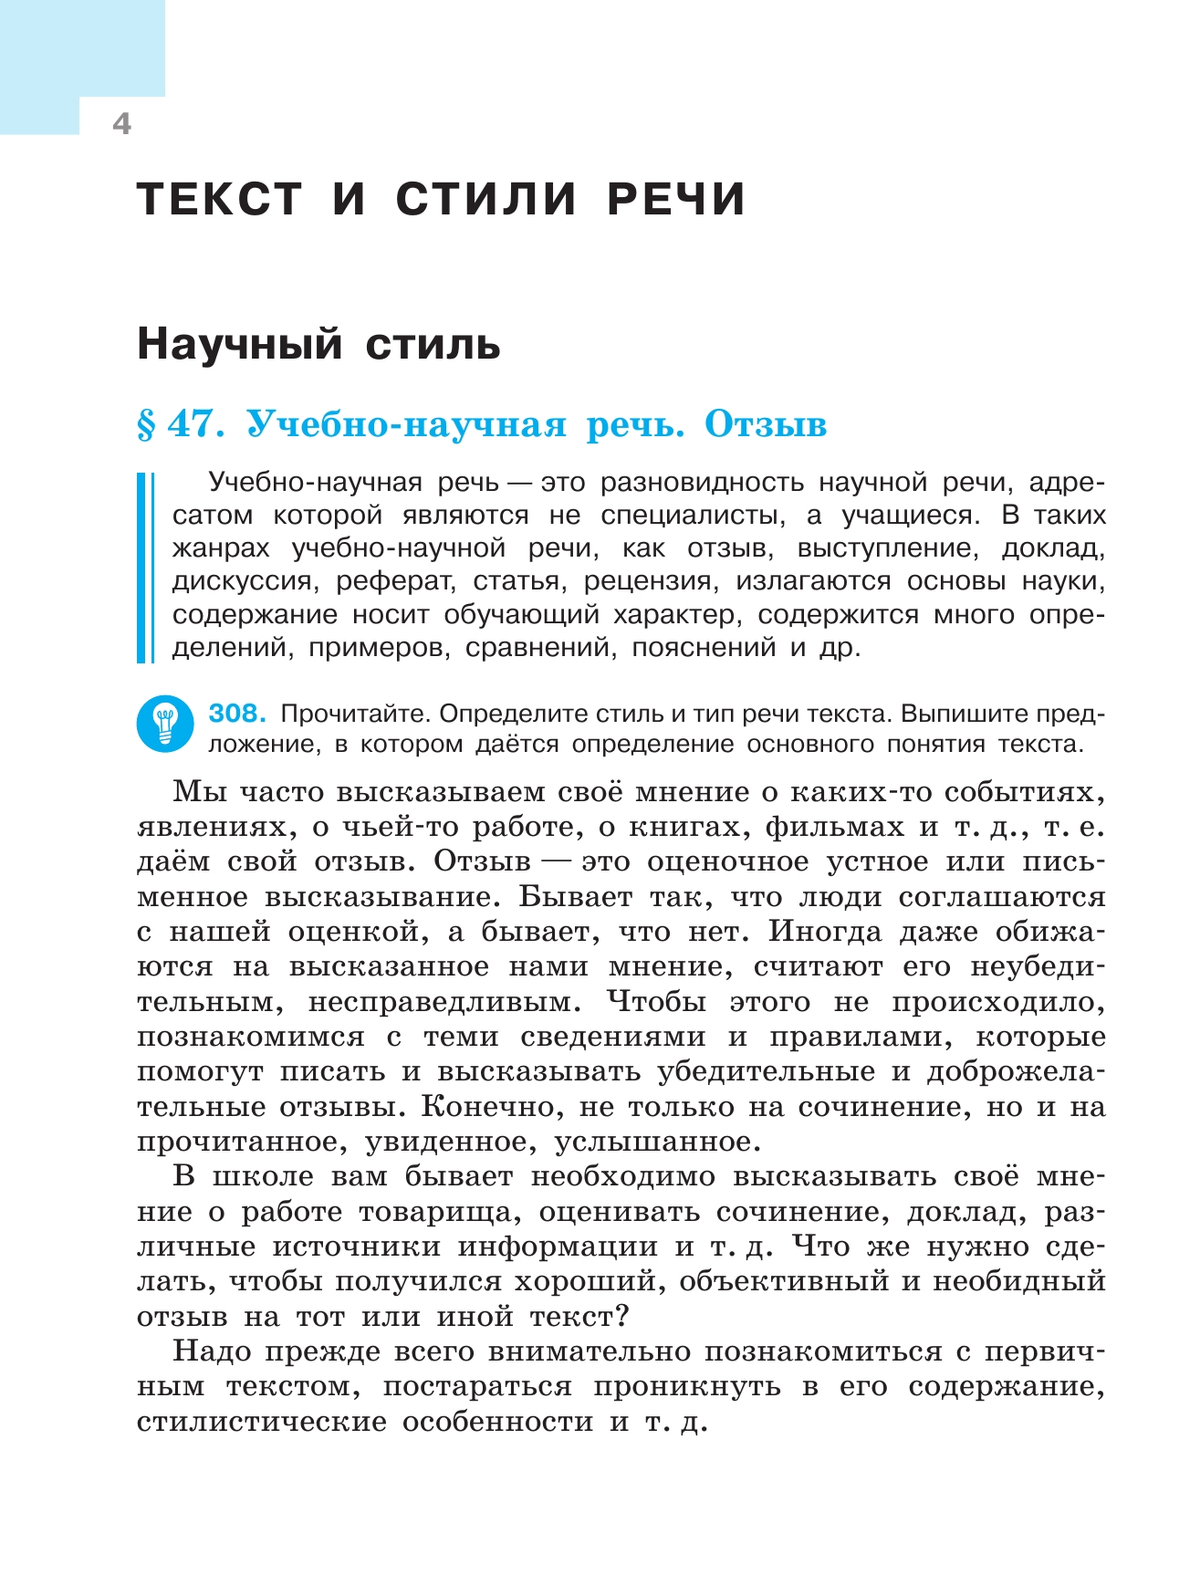 Русский язык. 7 класс. Учебник. В 2 ч. Часть 2 2